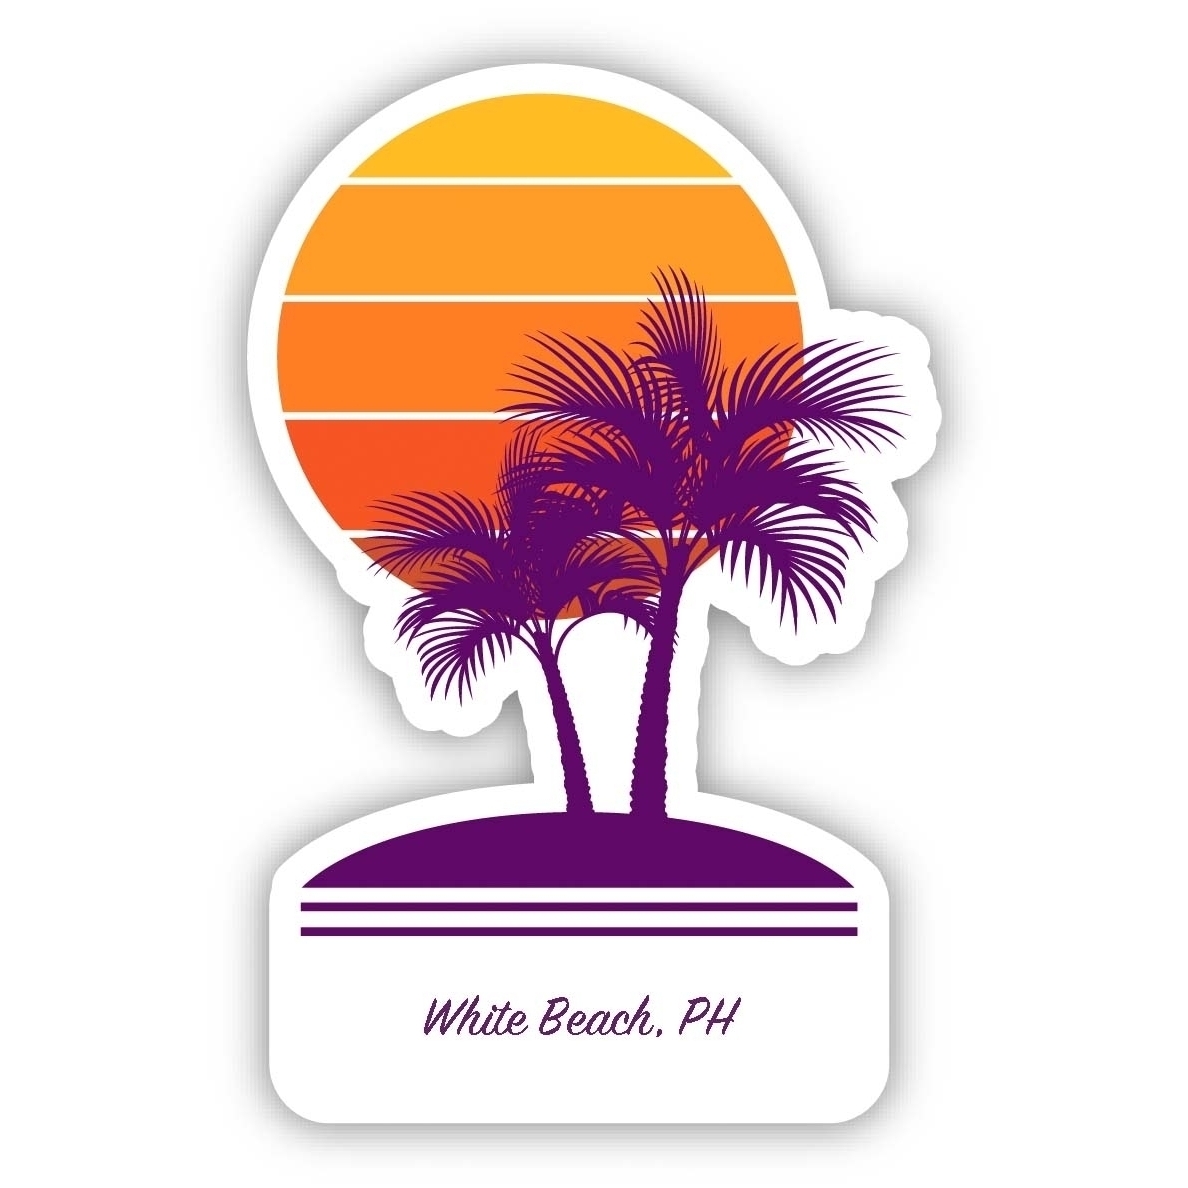 White Beach Philippines Souvenir 4 Inch Vinyl Decal Sticker Palm Design